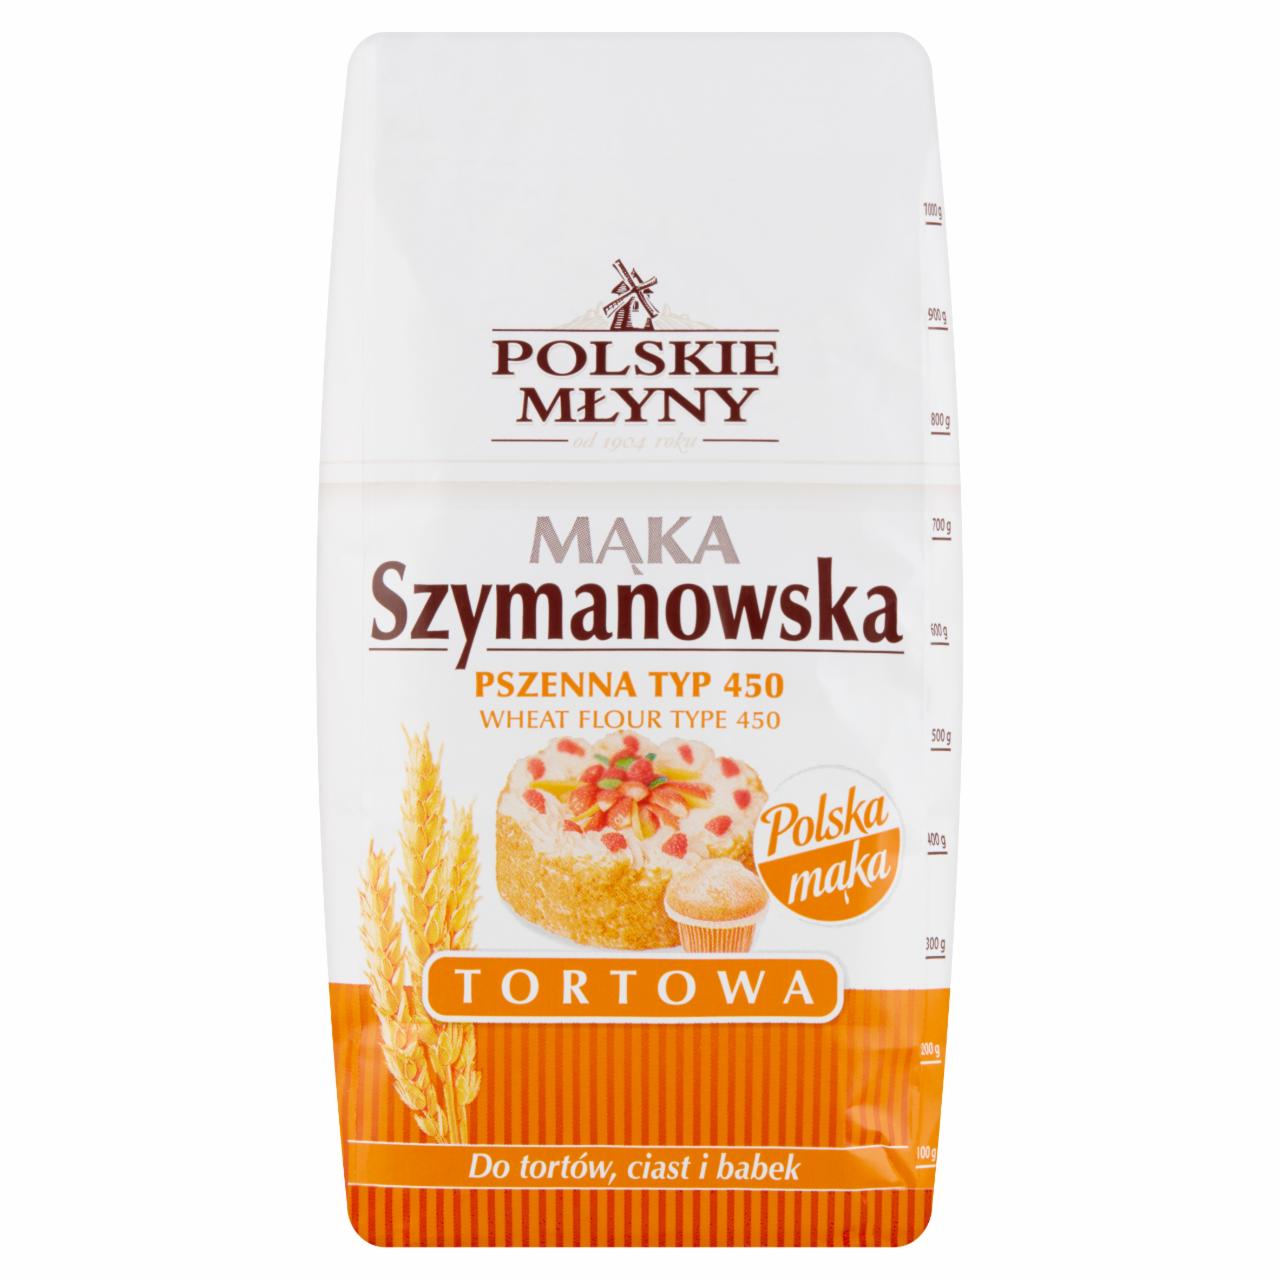 Zdjęcia - Polskie Młyny Mąka Szymanowska Tortowa pszenna typ 450 1 kg